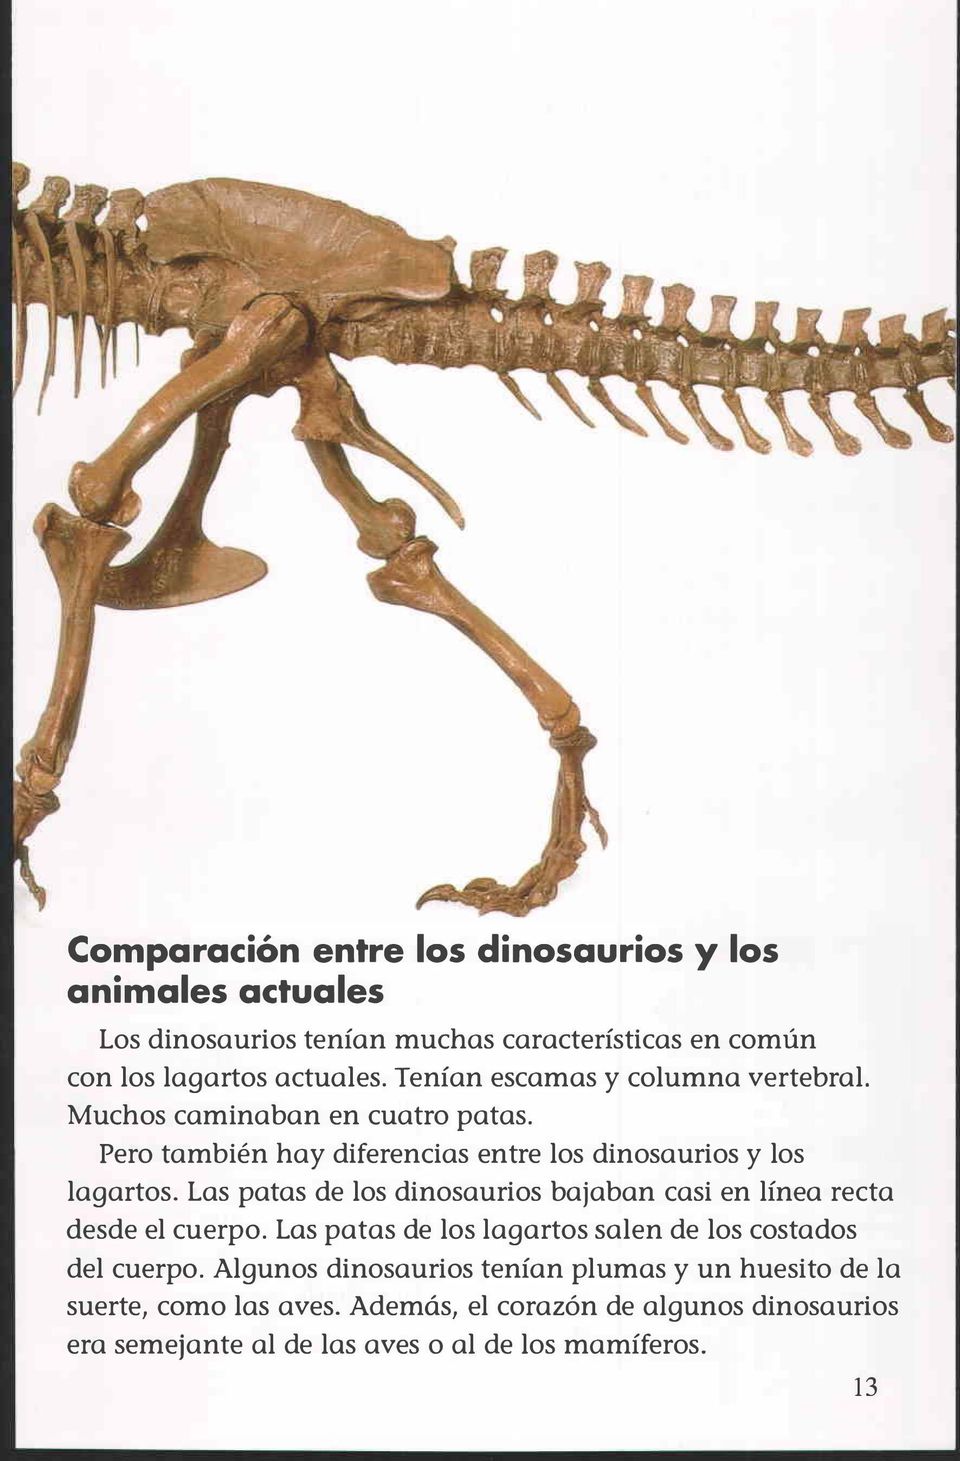 Las patas de los dinosaurios bajaban casi en línea recta desde el cuerpo. Las patas de los lagartos salen de los costados del cuerpo.